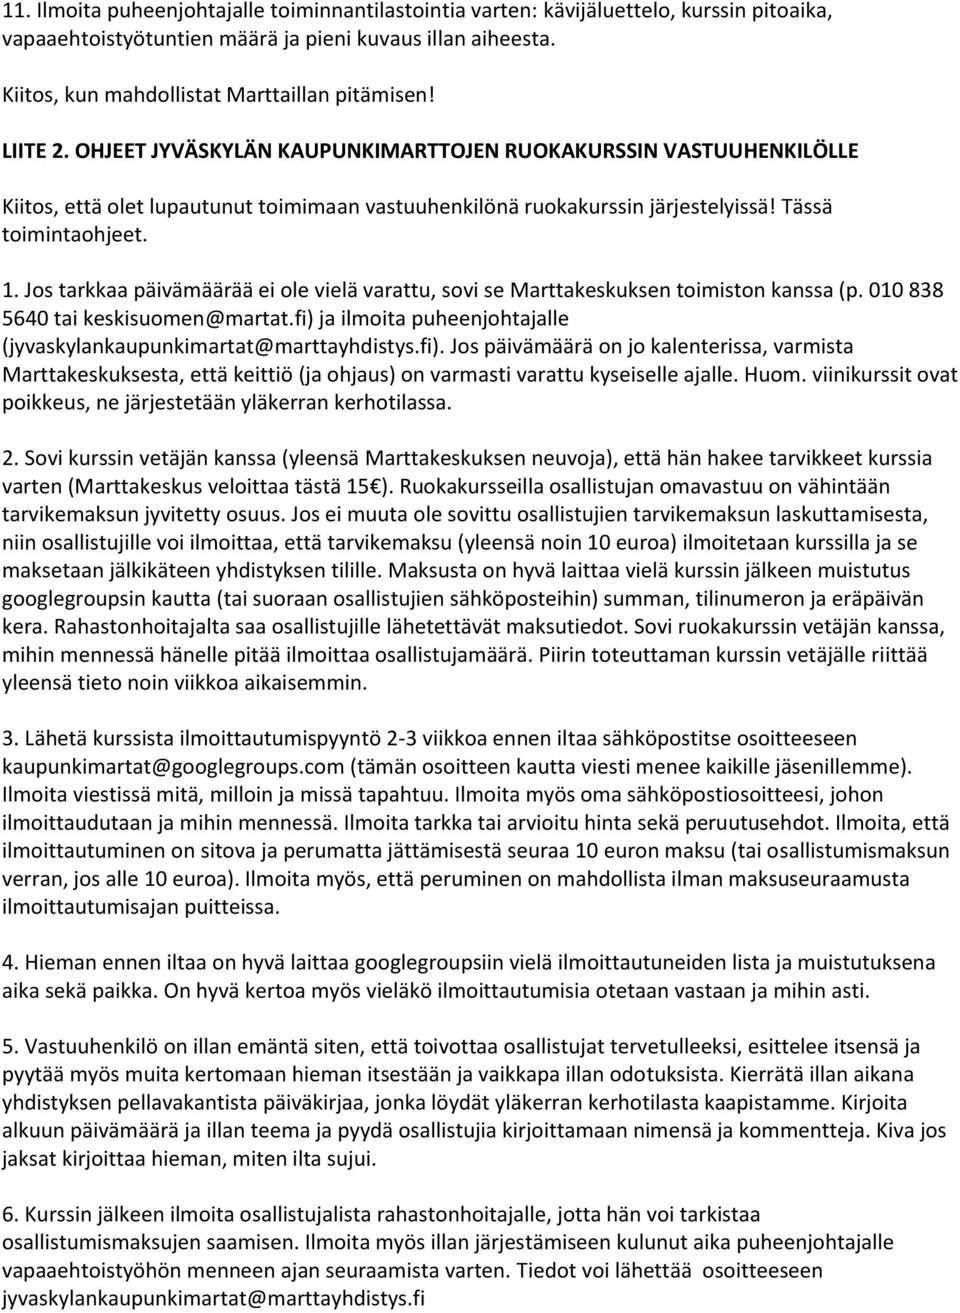 Jos tarkkaa päivämäärää ei ole vielä varattu, sovi se Marttakeskuksen toimiston kanssa (p. 010 838 5640 tai keskisuomen@martat.fi) ja ilmoita puheenjohtajalle (jyvaskylankaupunkimartat@marttayhdistys.